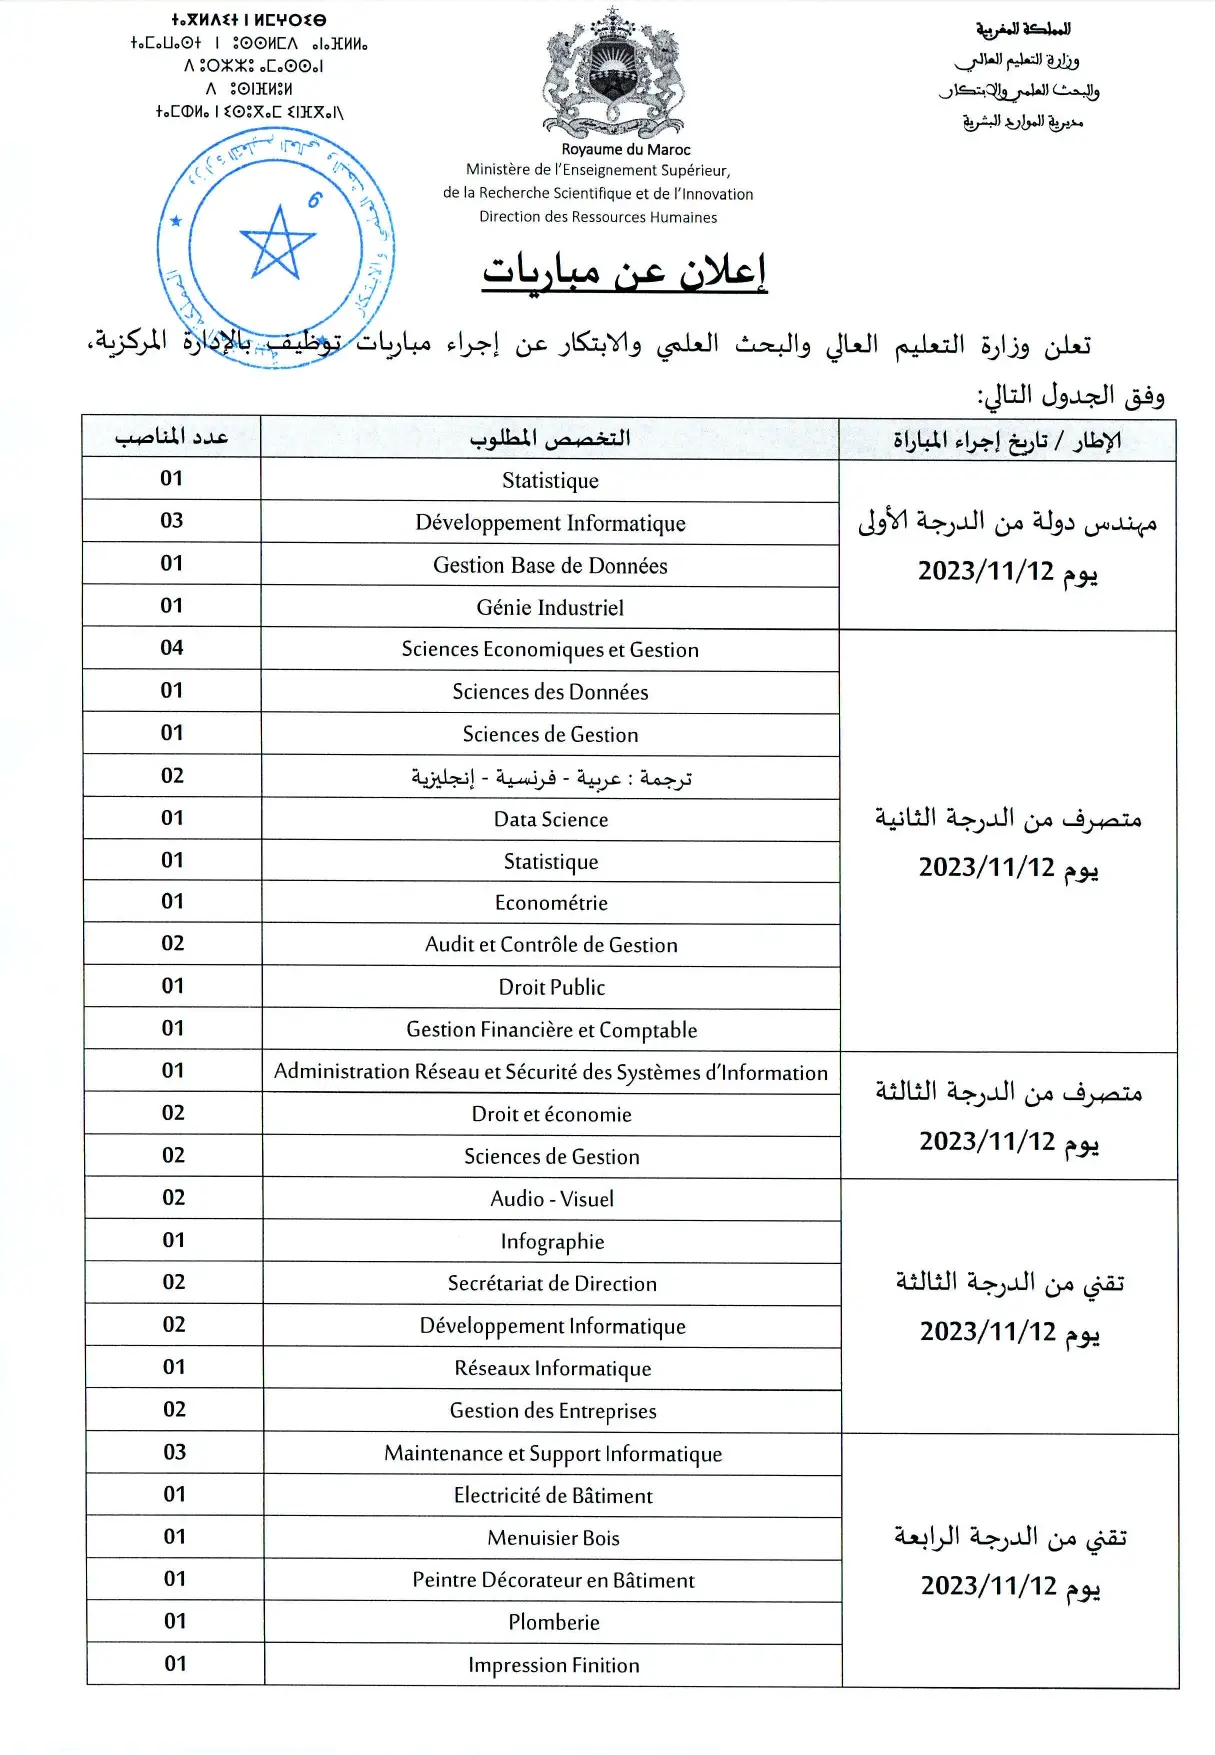 Concours Ministère de l'Enseignement supérieur 2023 (44 postes)